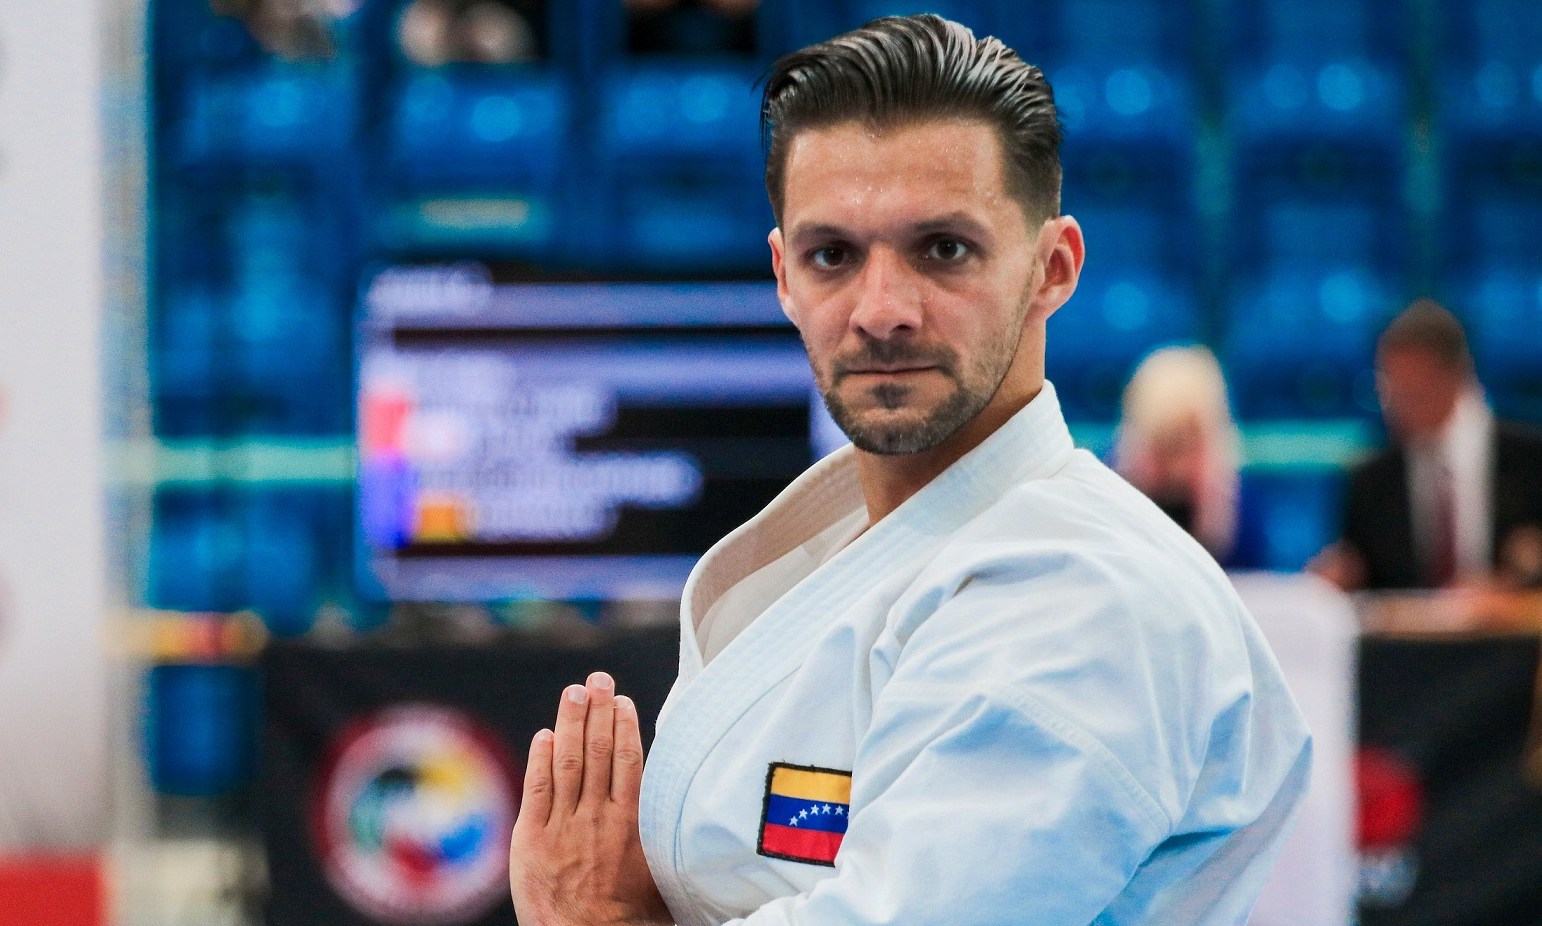 El Sumario - El venezolano es el karateca con mayores medallas ganadas en competiciones individuales en la historia del Campeonato Mundial de Karate de la WKF